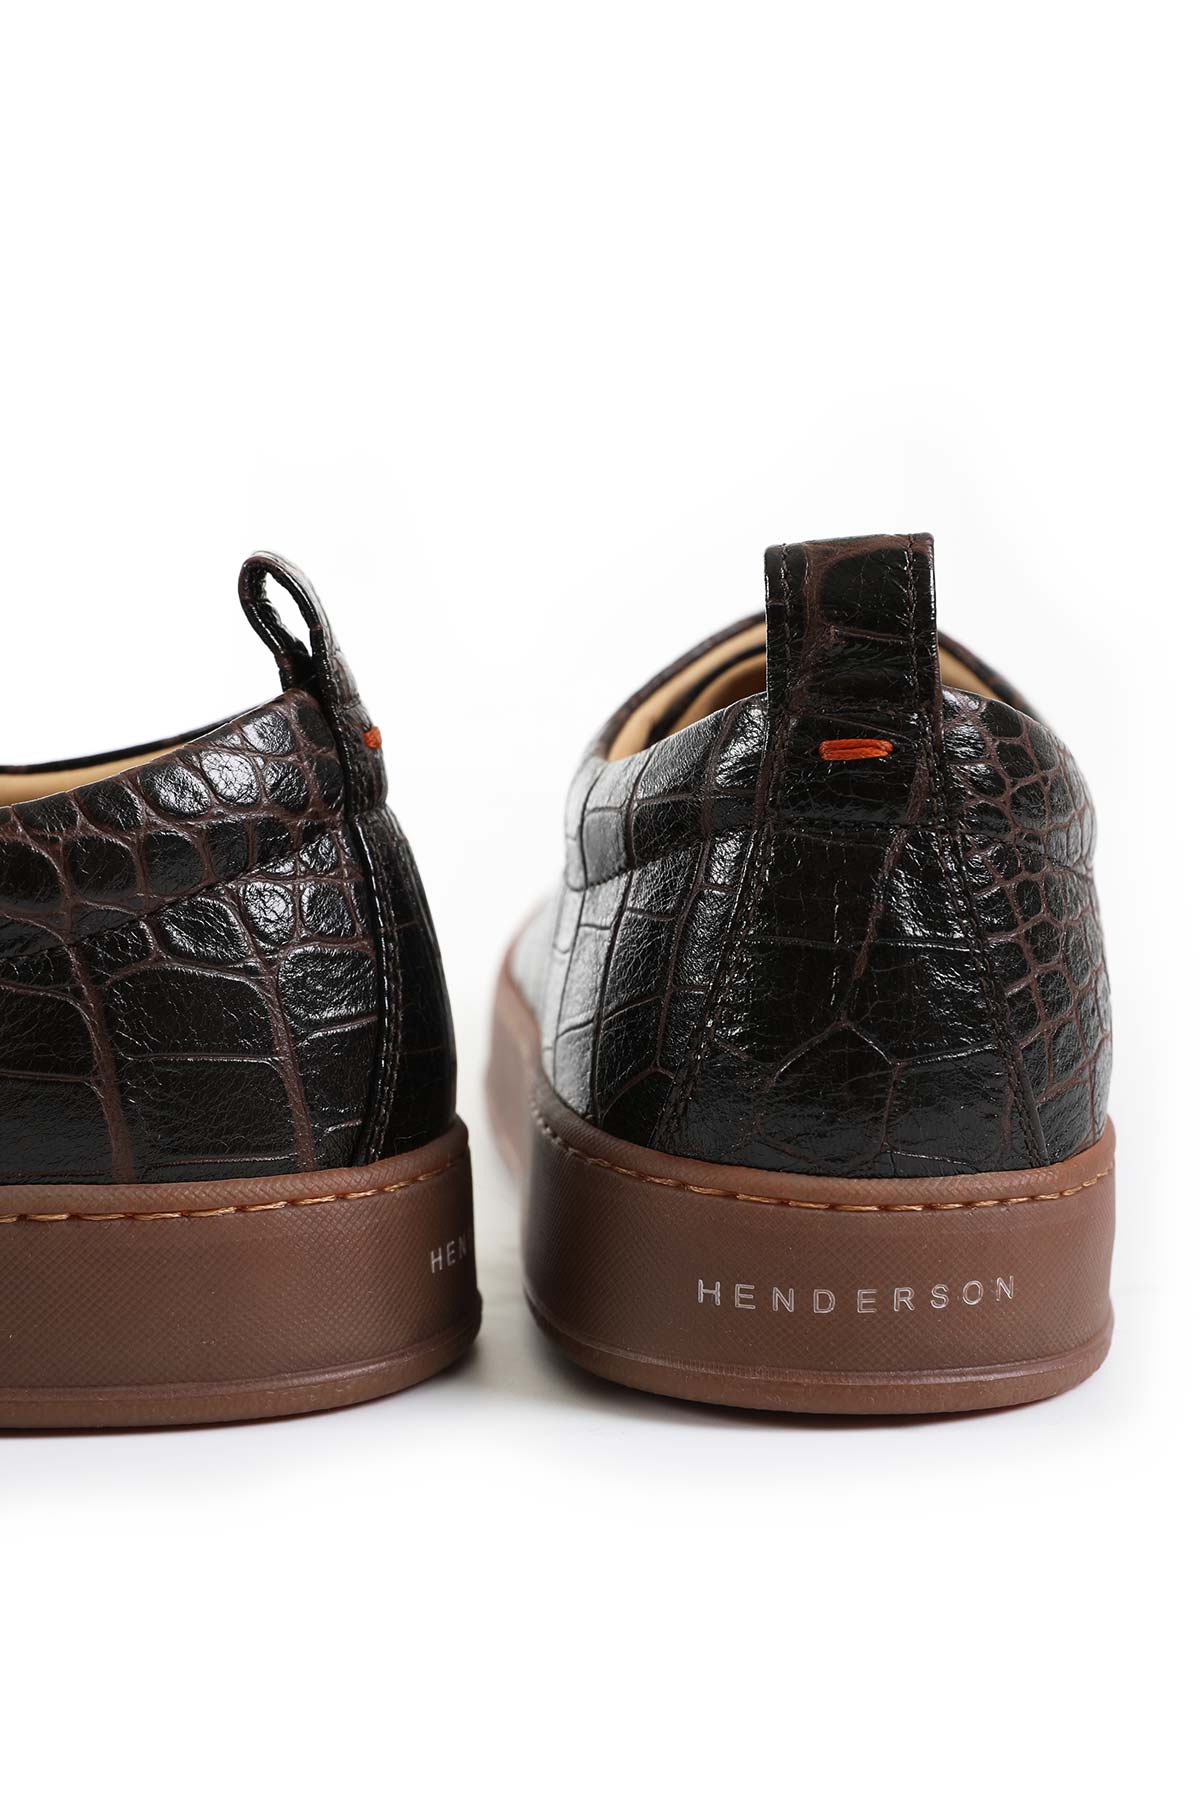 Henderson Sneaker Ayakkabı-Libas Trendy Fashion Store